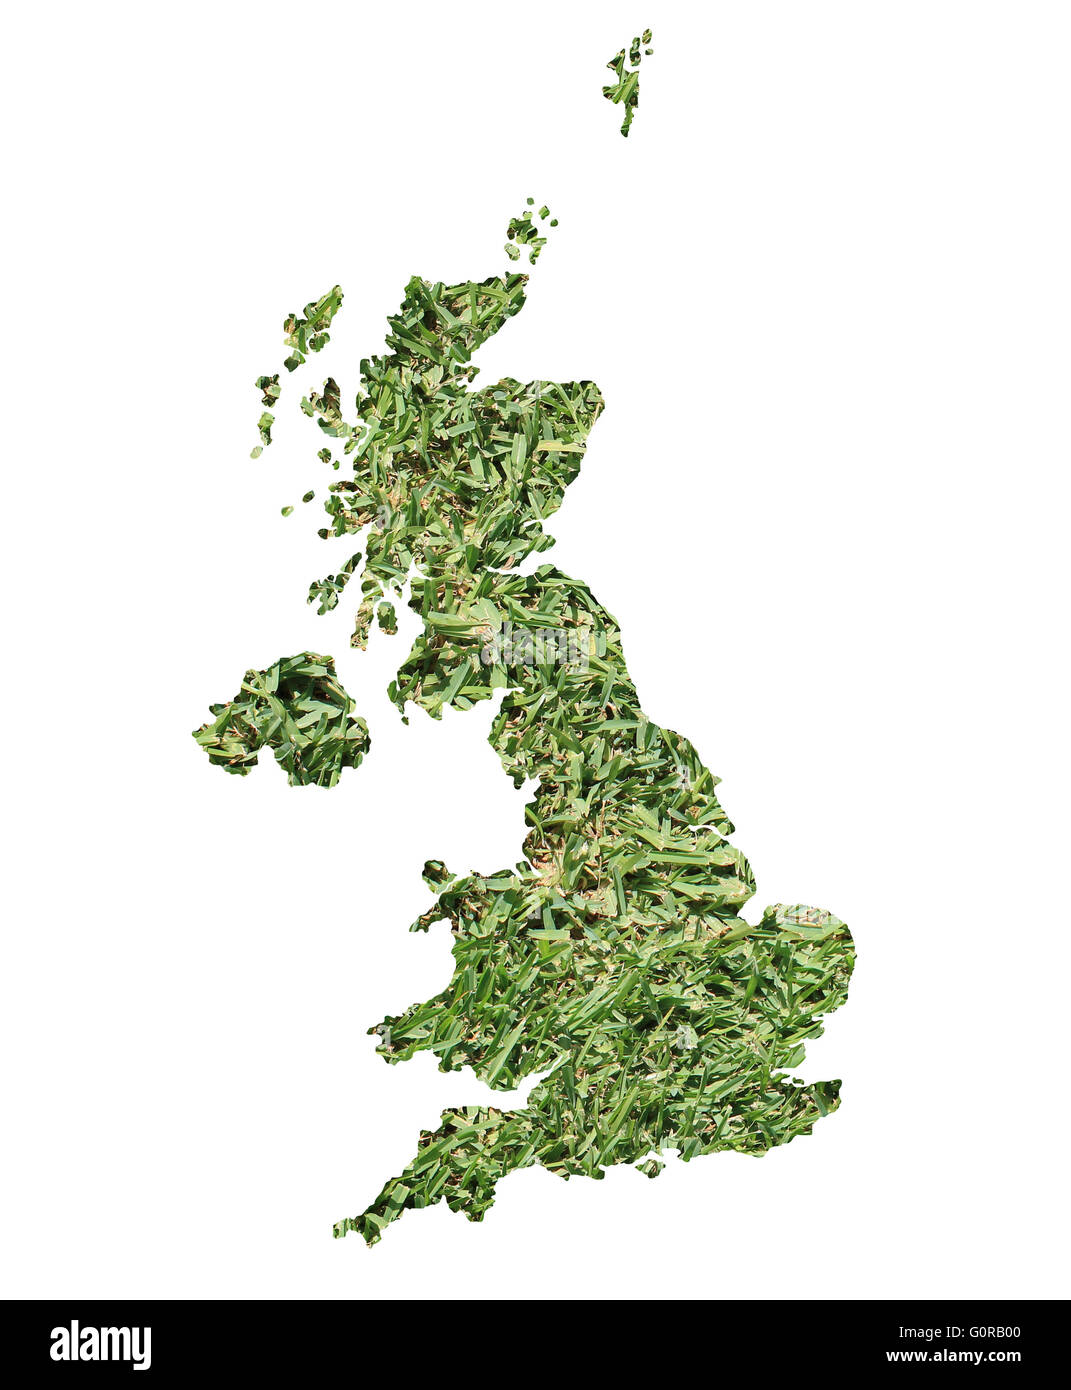 Mapa de Reino Unido llenas de hierba verde, concepto ambiental y ecológica. Foto de stock